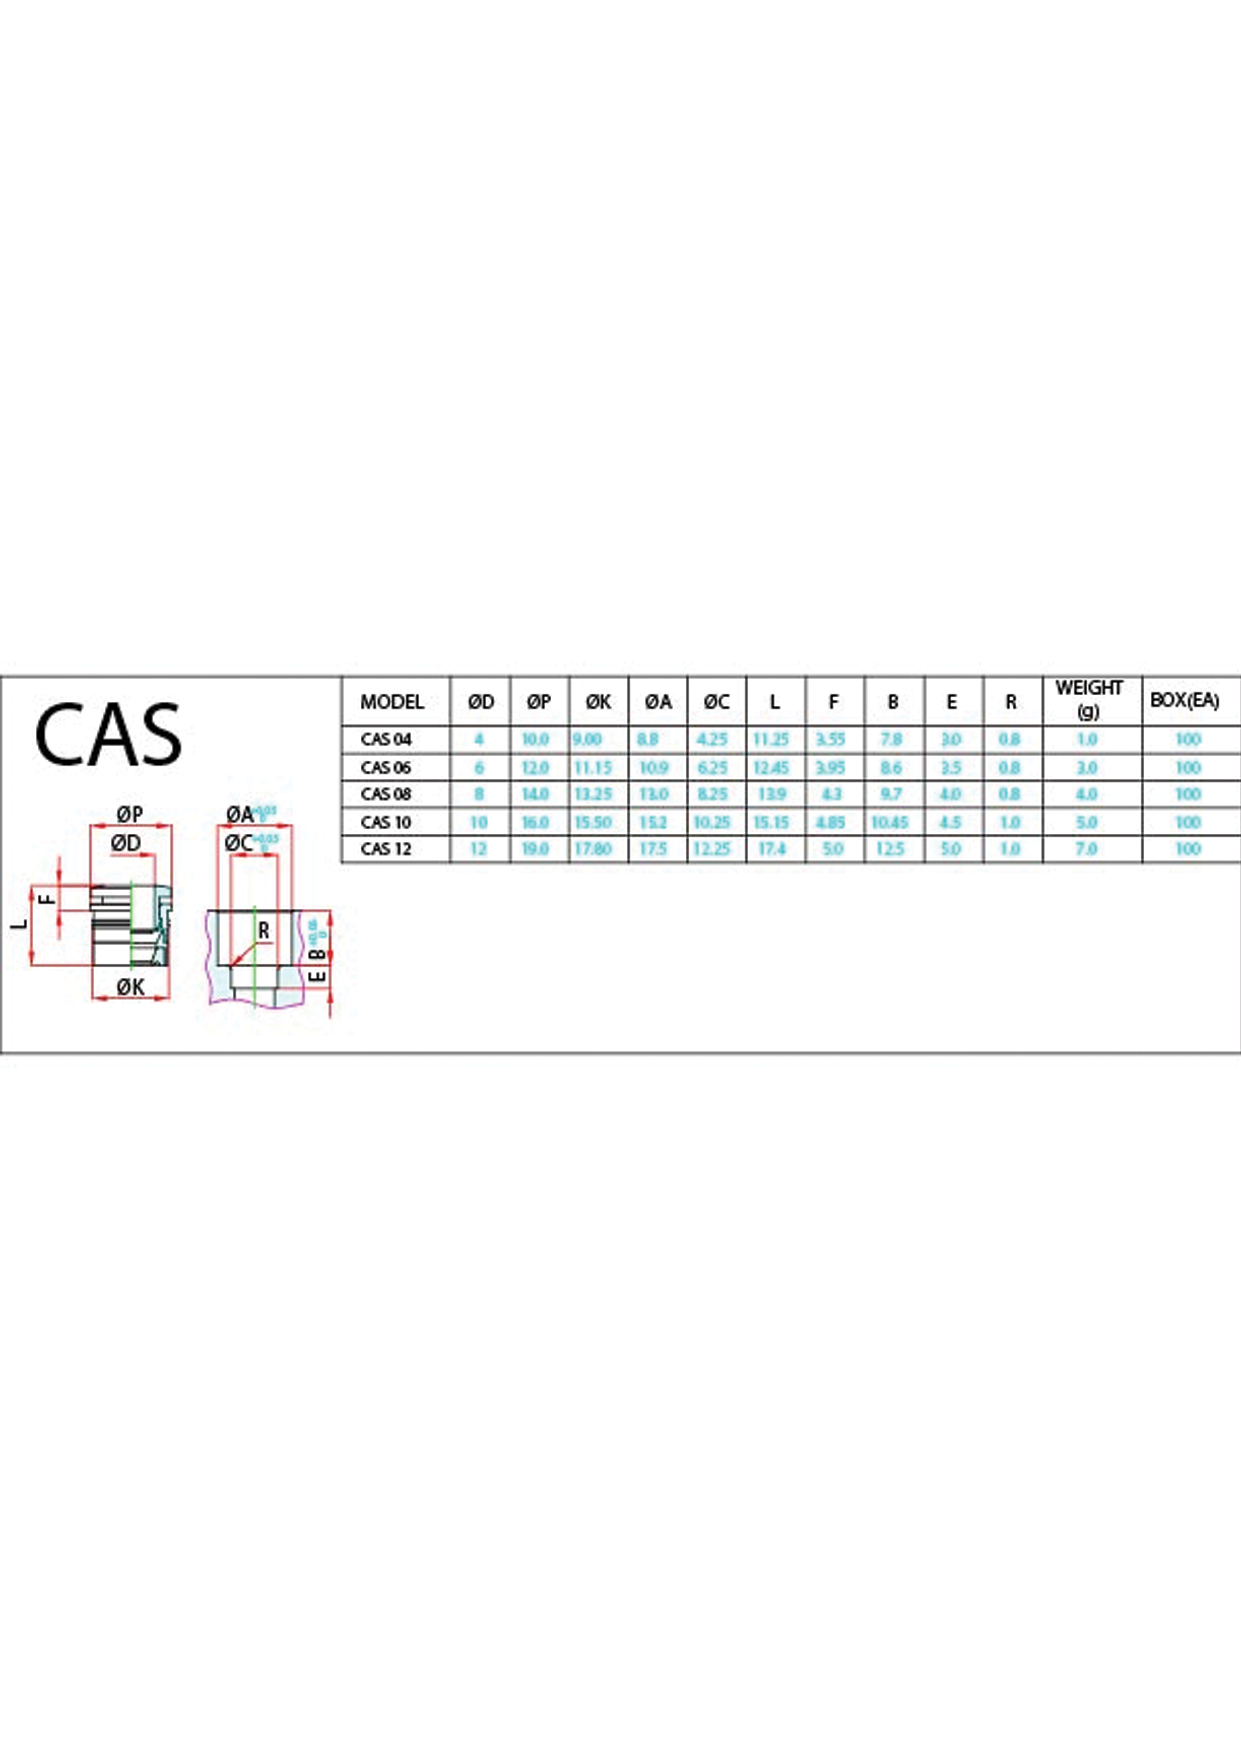 CAS (Metric) Data Sheet